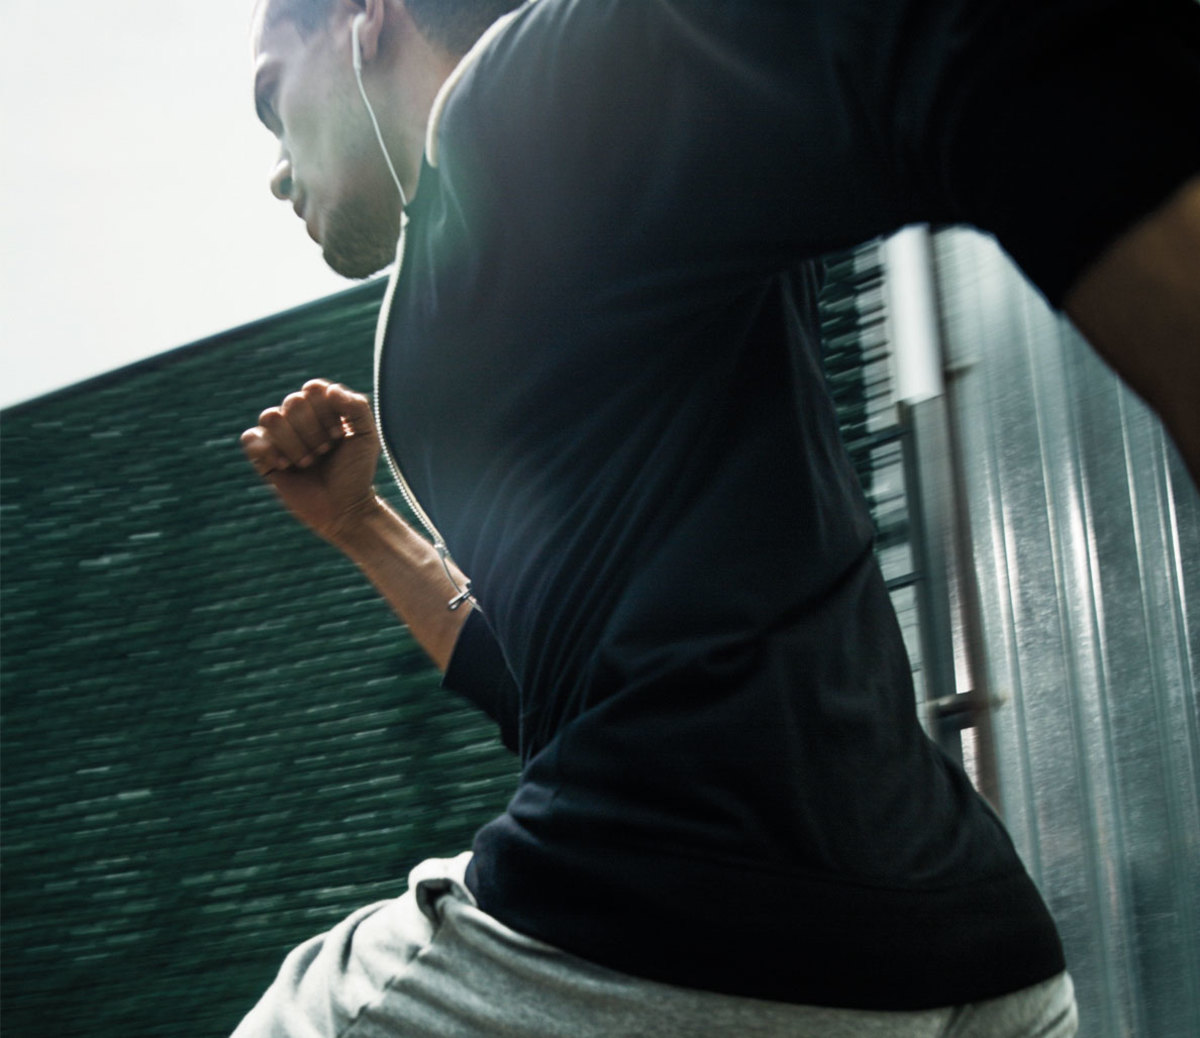 5 Brutal Shoulder Workout Finishers For Big Shoulders